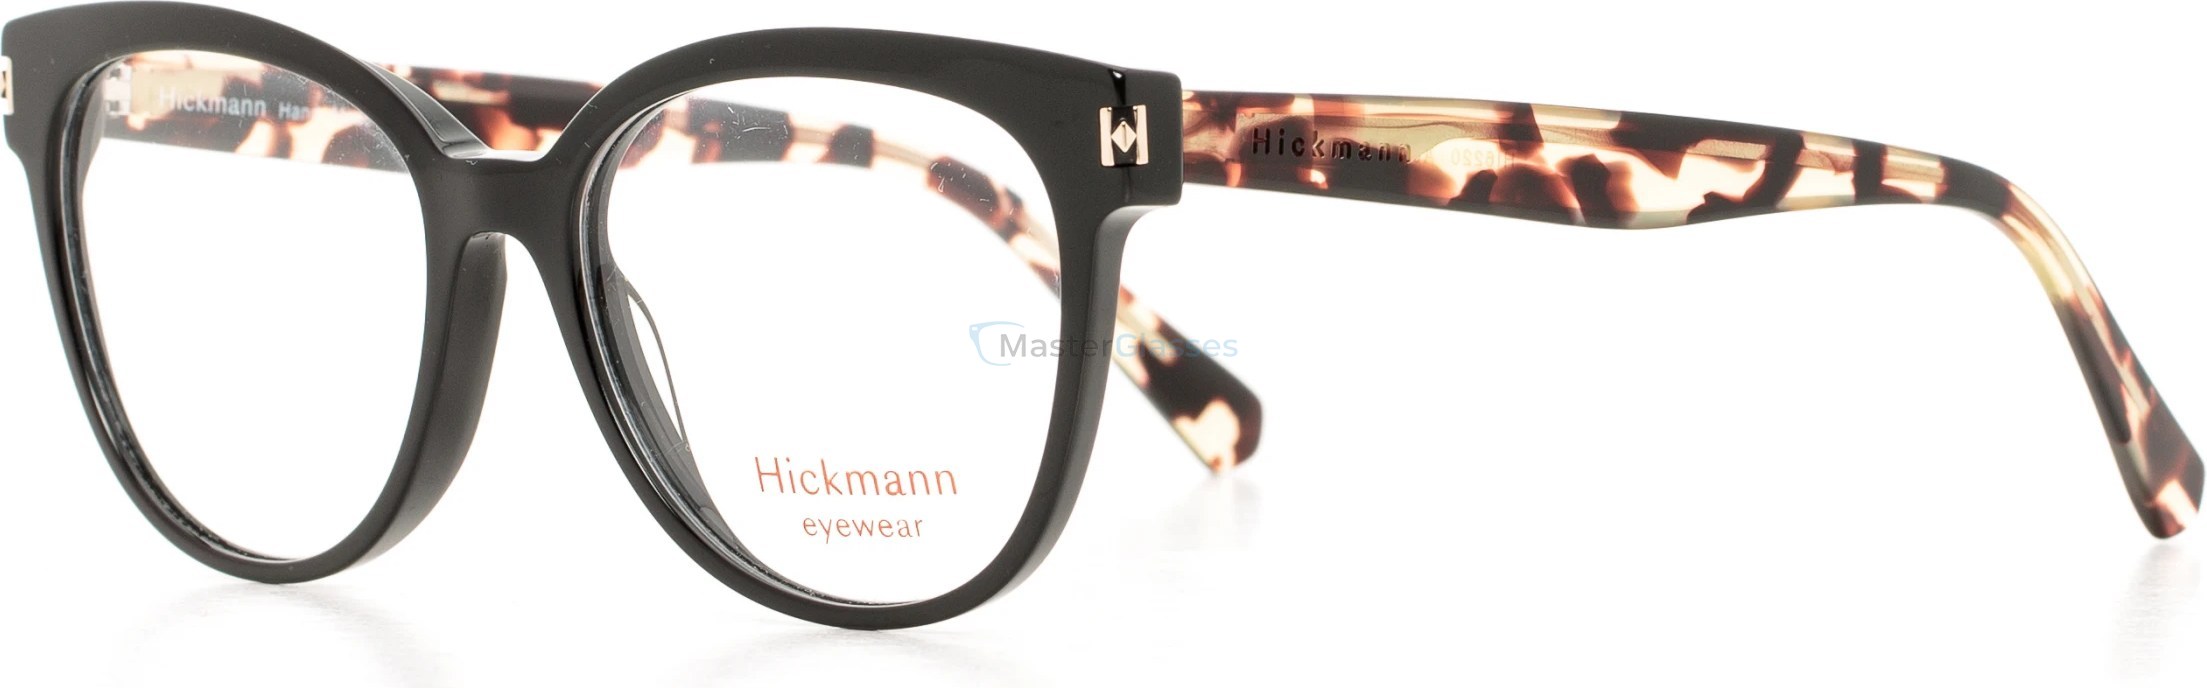  Hickmann HI6220 A01